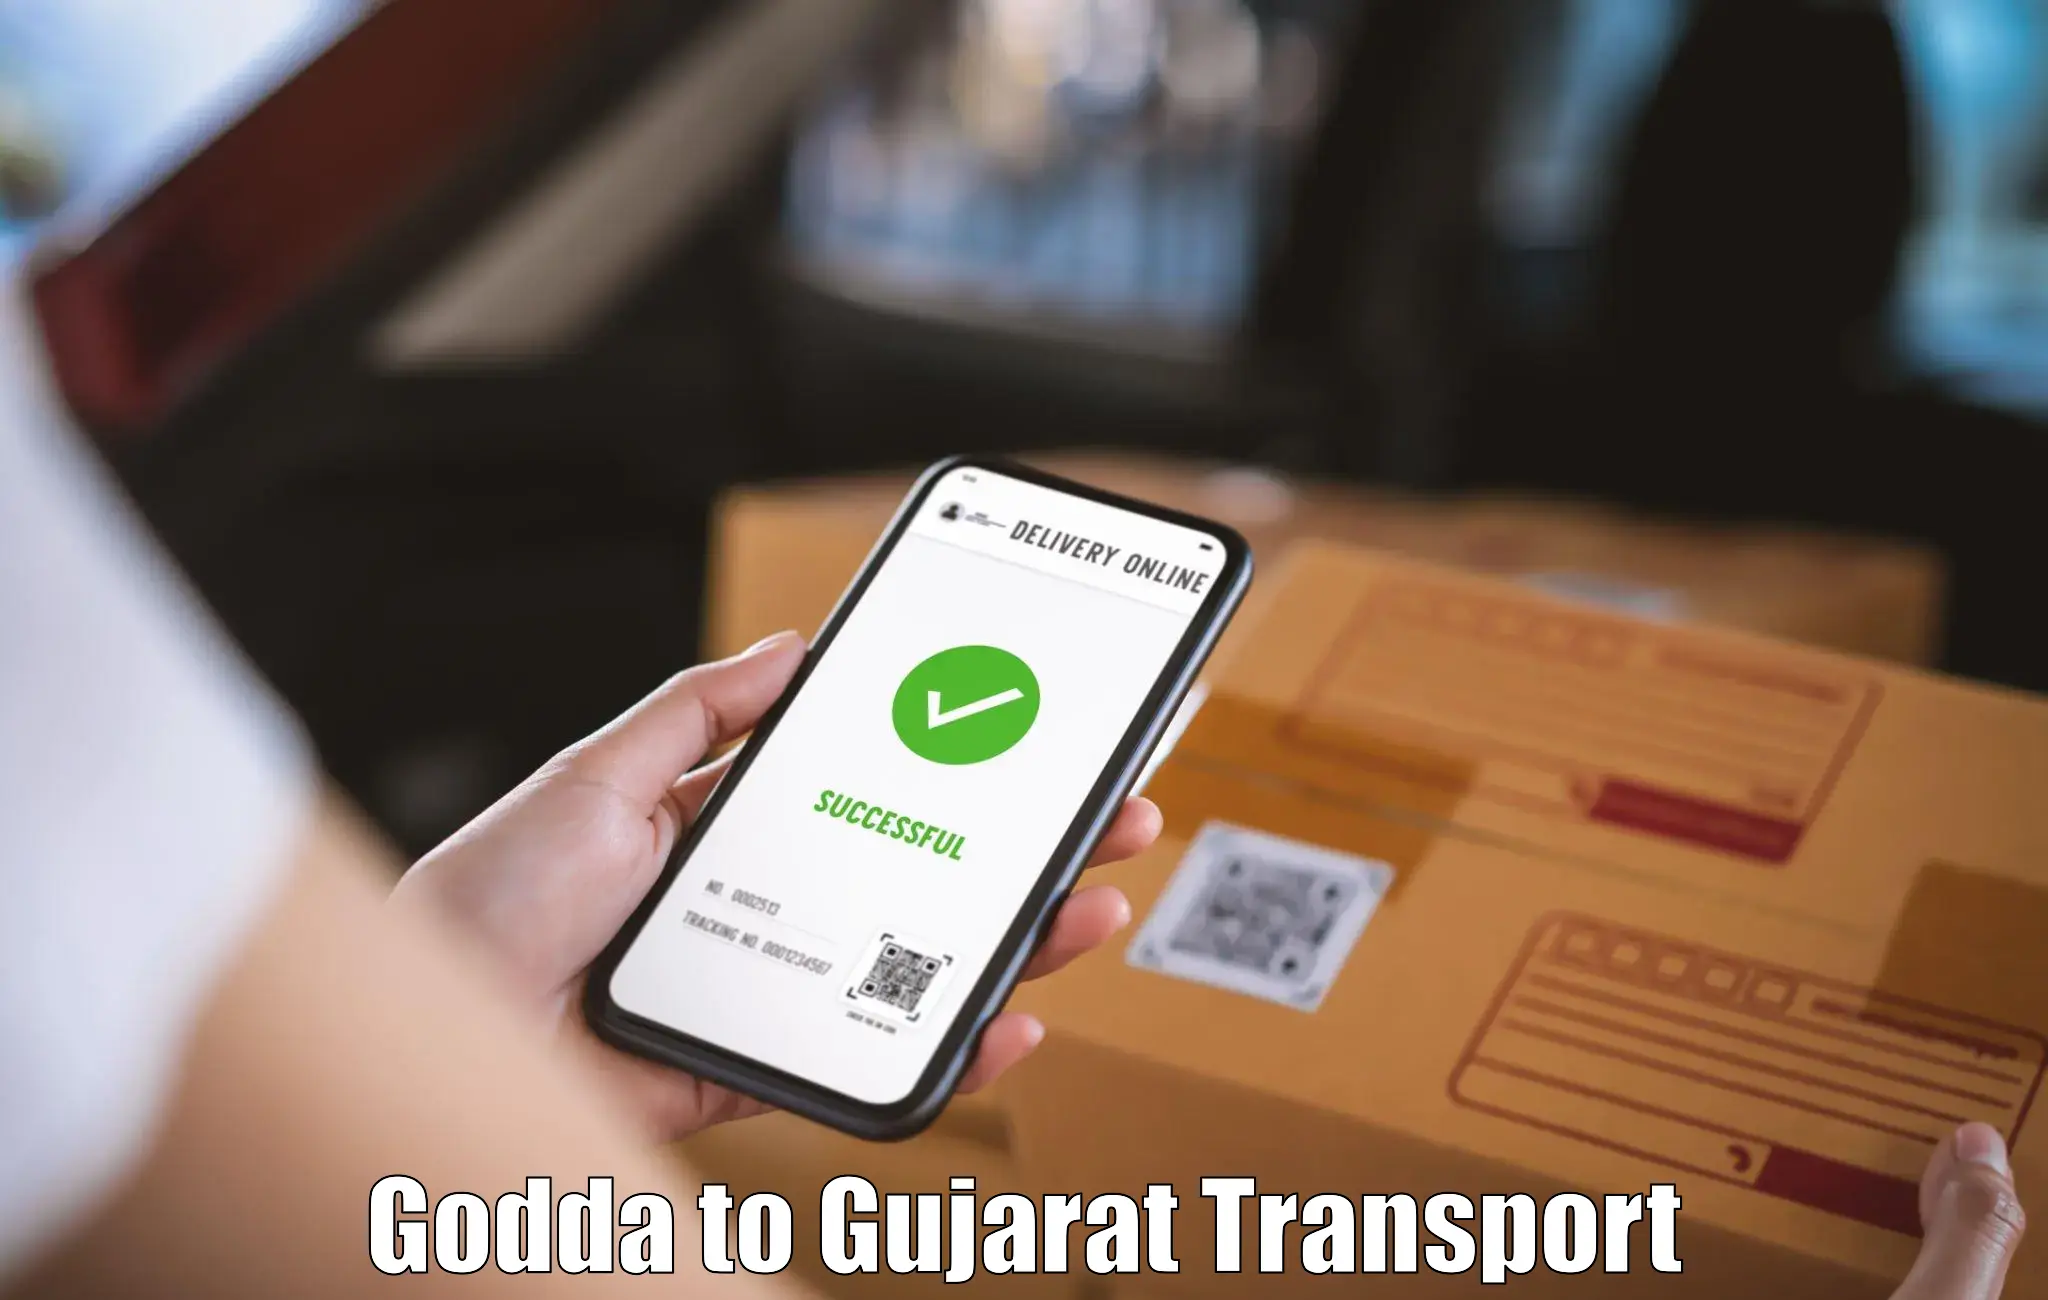 Part load transport service in India Godda to Surendranagar